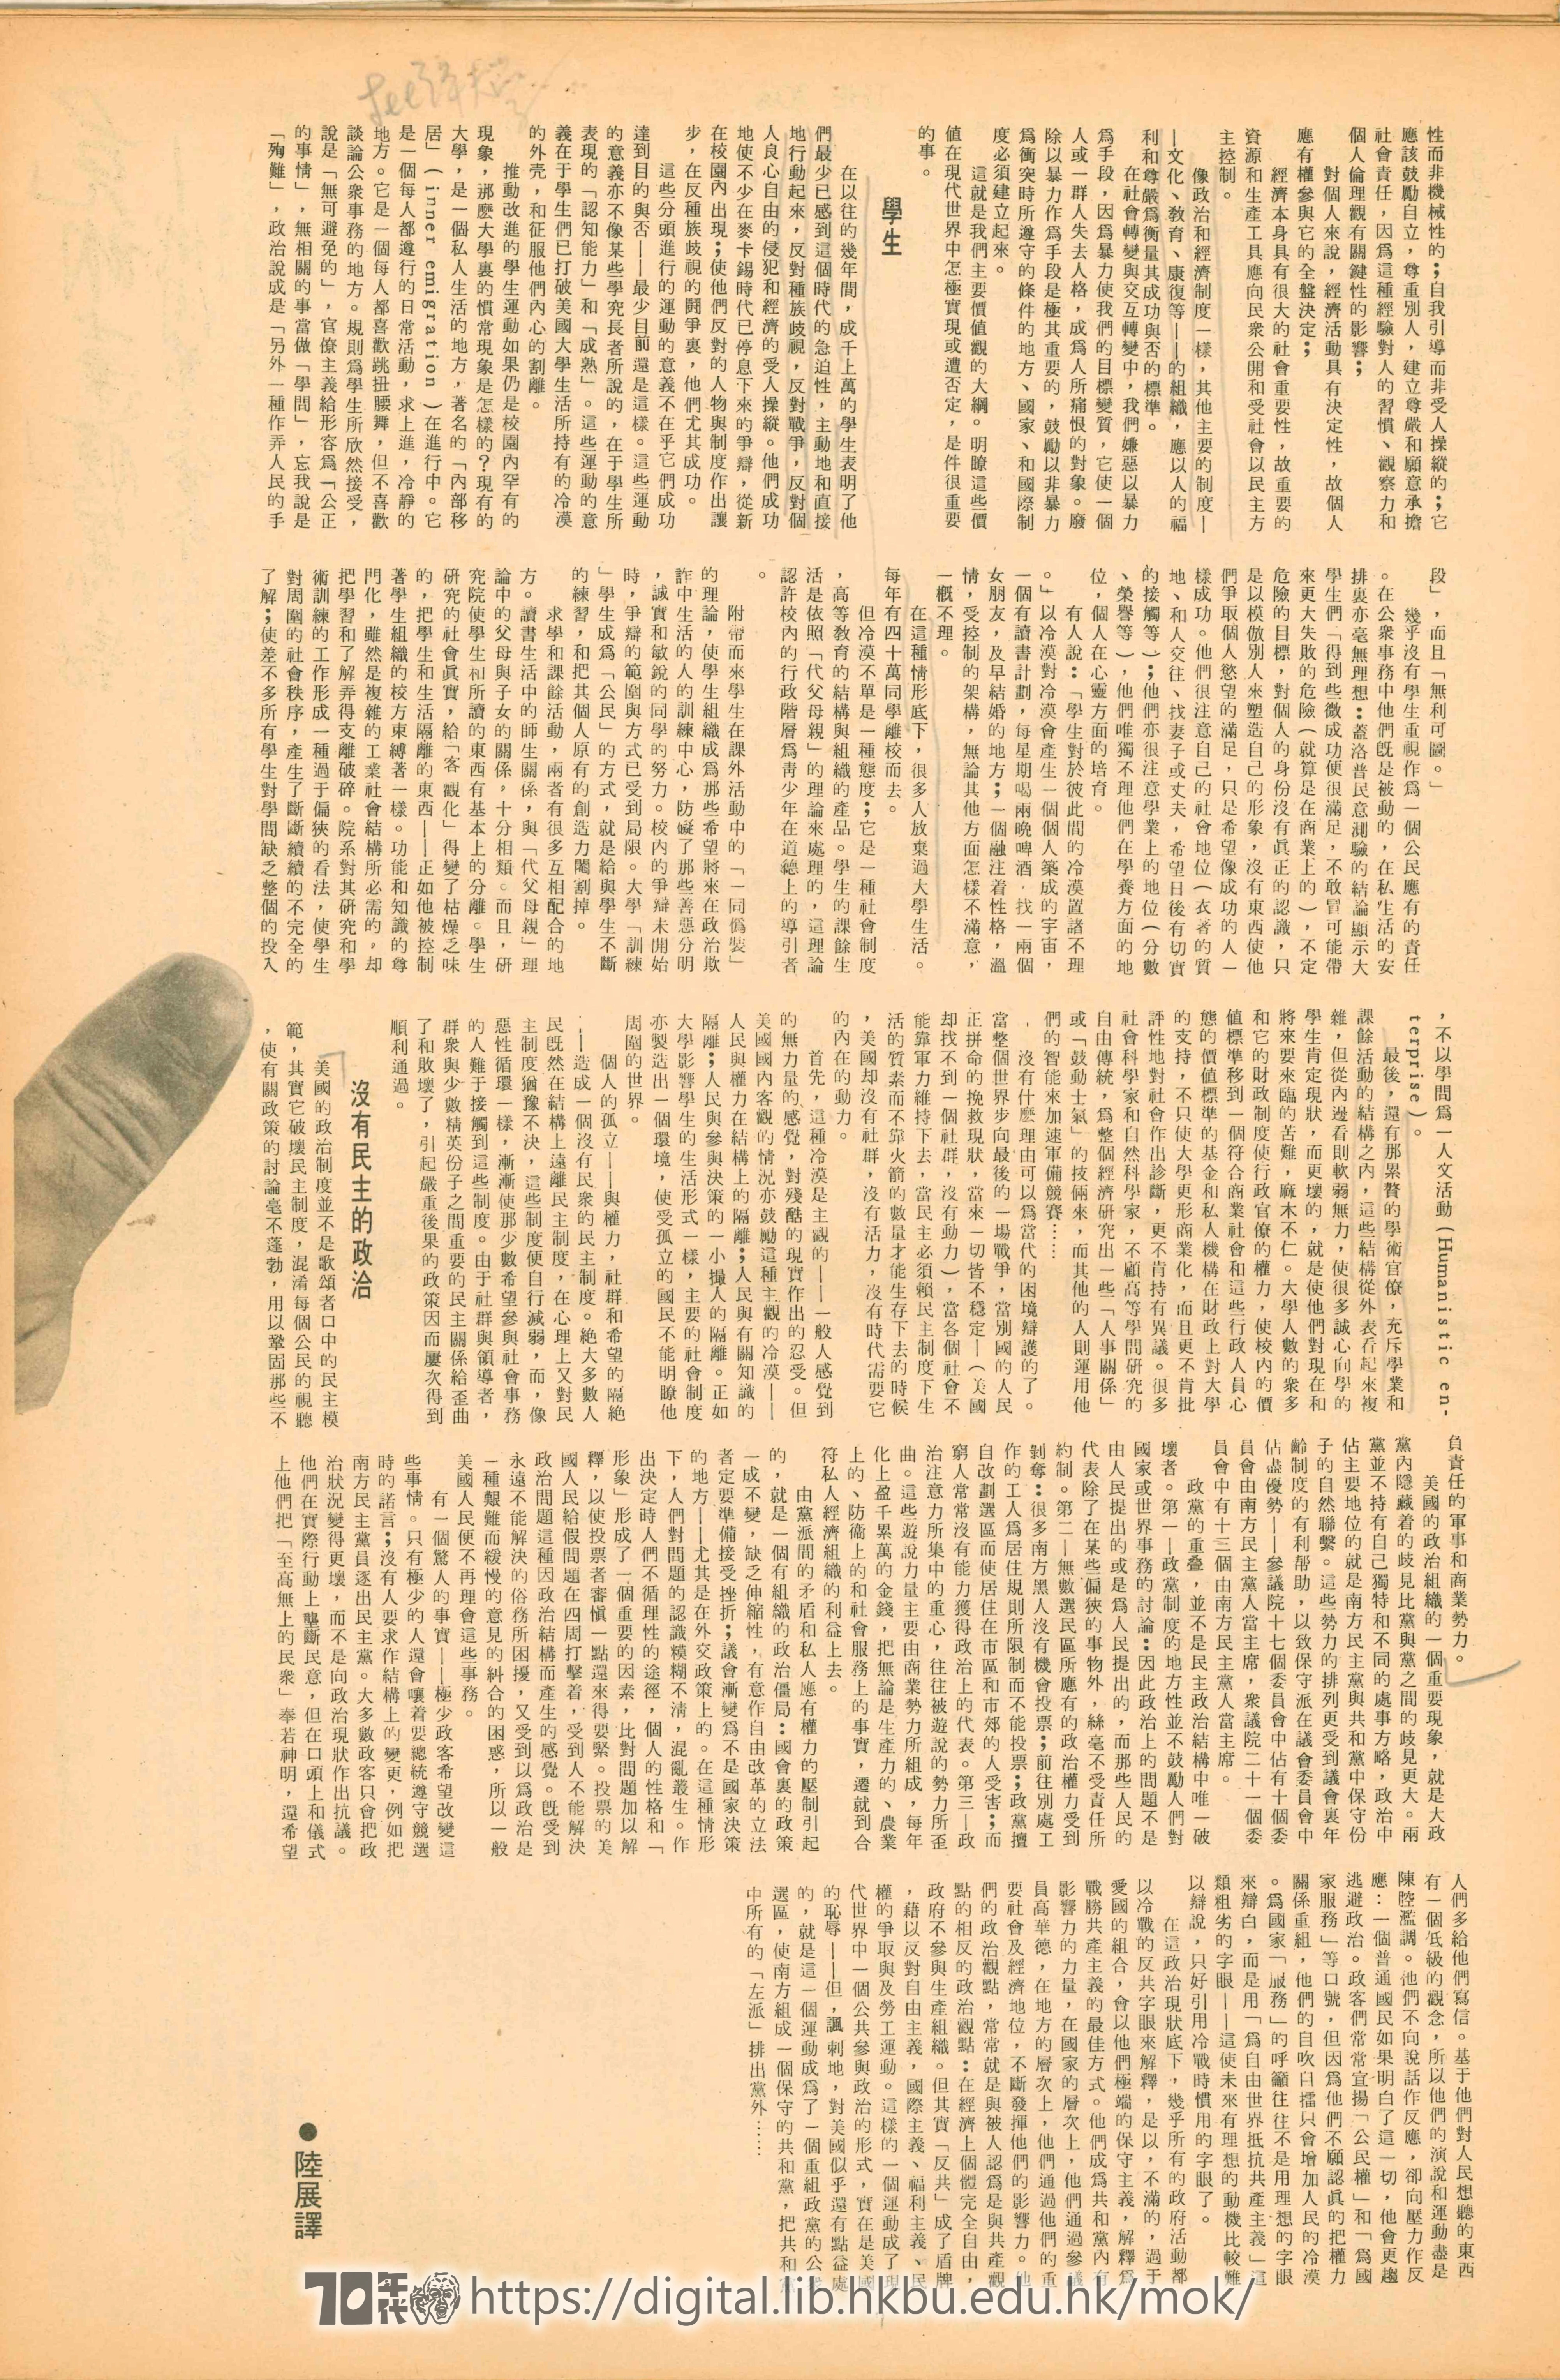  28 胡隆港宣言  陸展